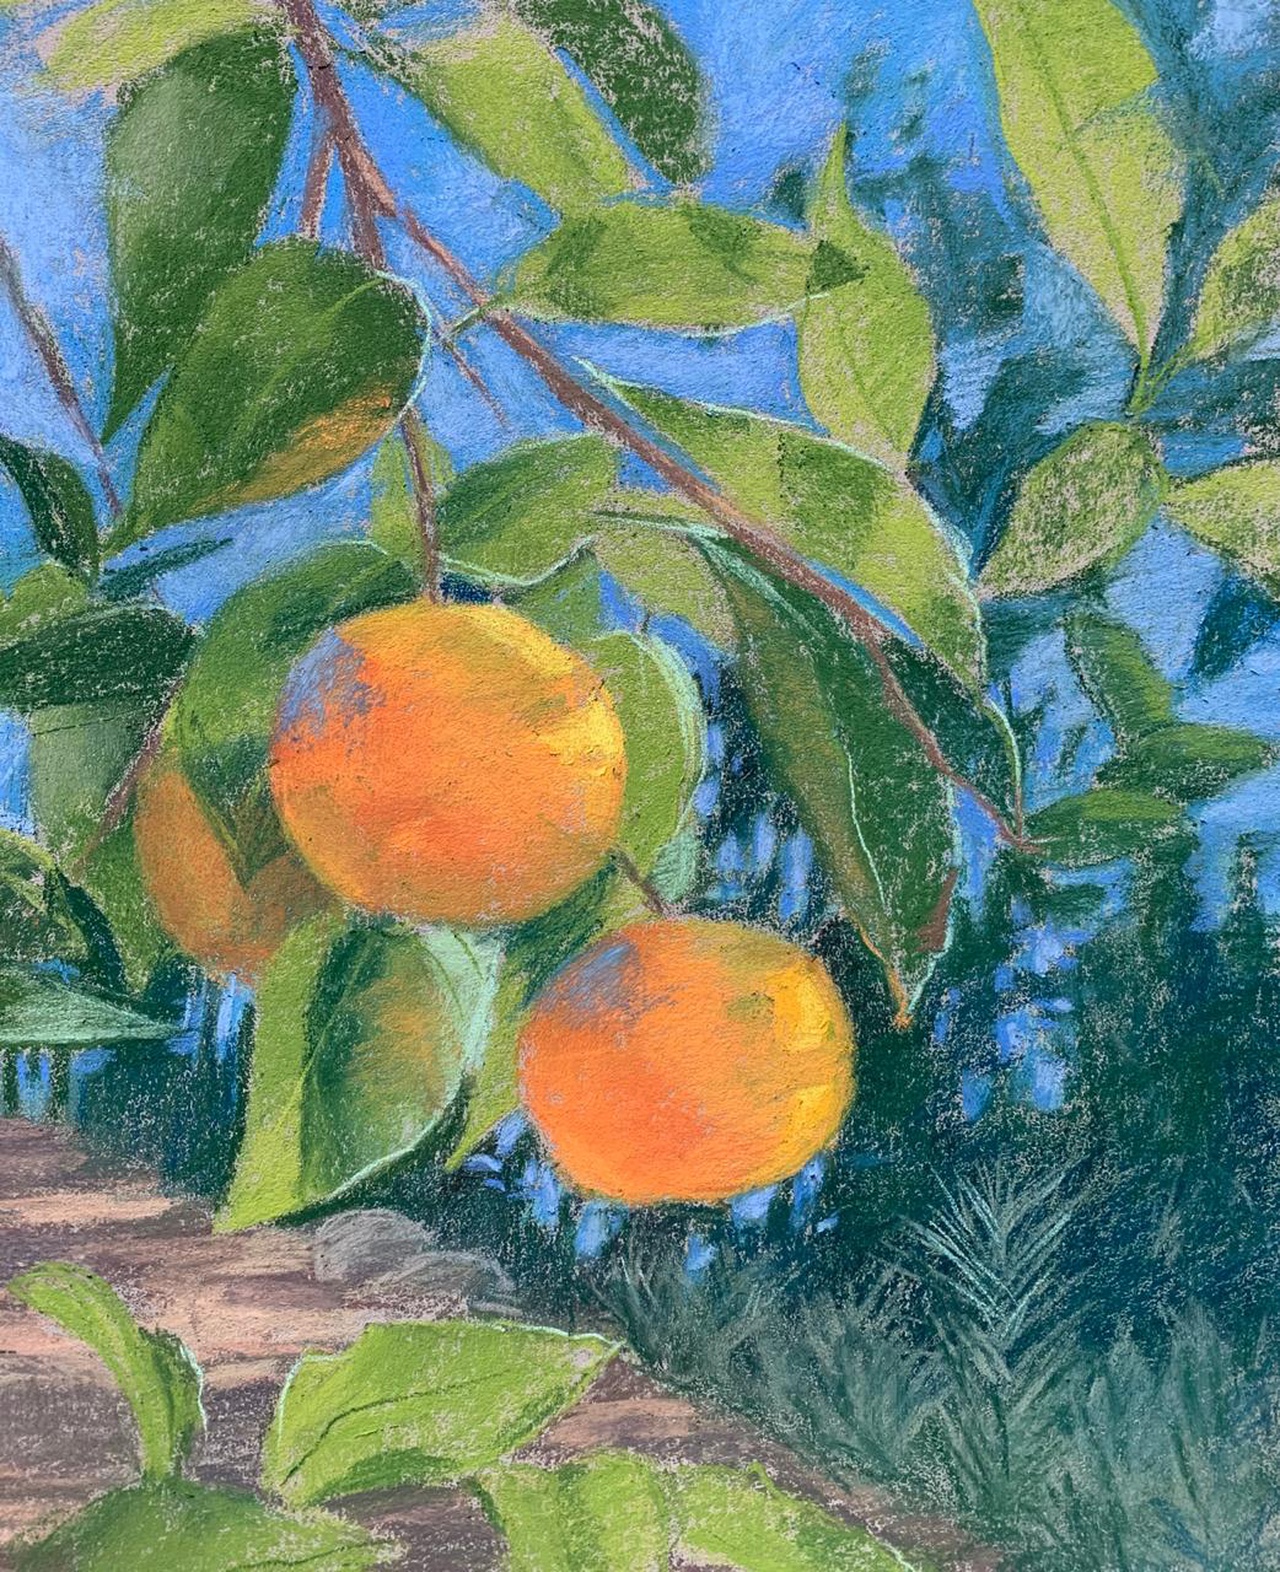 
   В южных странах вовсю спеют мандарины и апельсины. Эти яркие плоды смотрятся, как украшения на ёлках. К тому же, оранжевый - это цвет радости.
Приглашаю вас 23 января 2021 года в 12.00 нарисовать мандарины под южным небом в прямом эфире в @artkvartal.fest.
Мы нарисуем мандарины на ветке сухой…